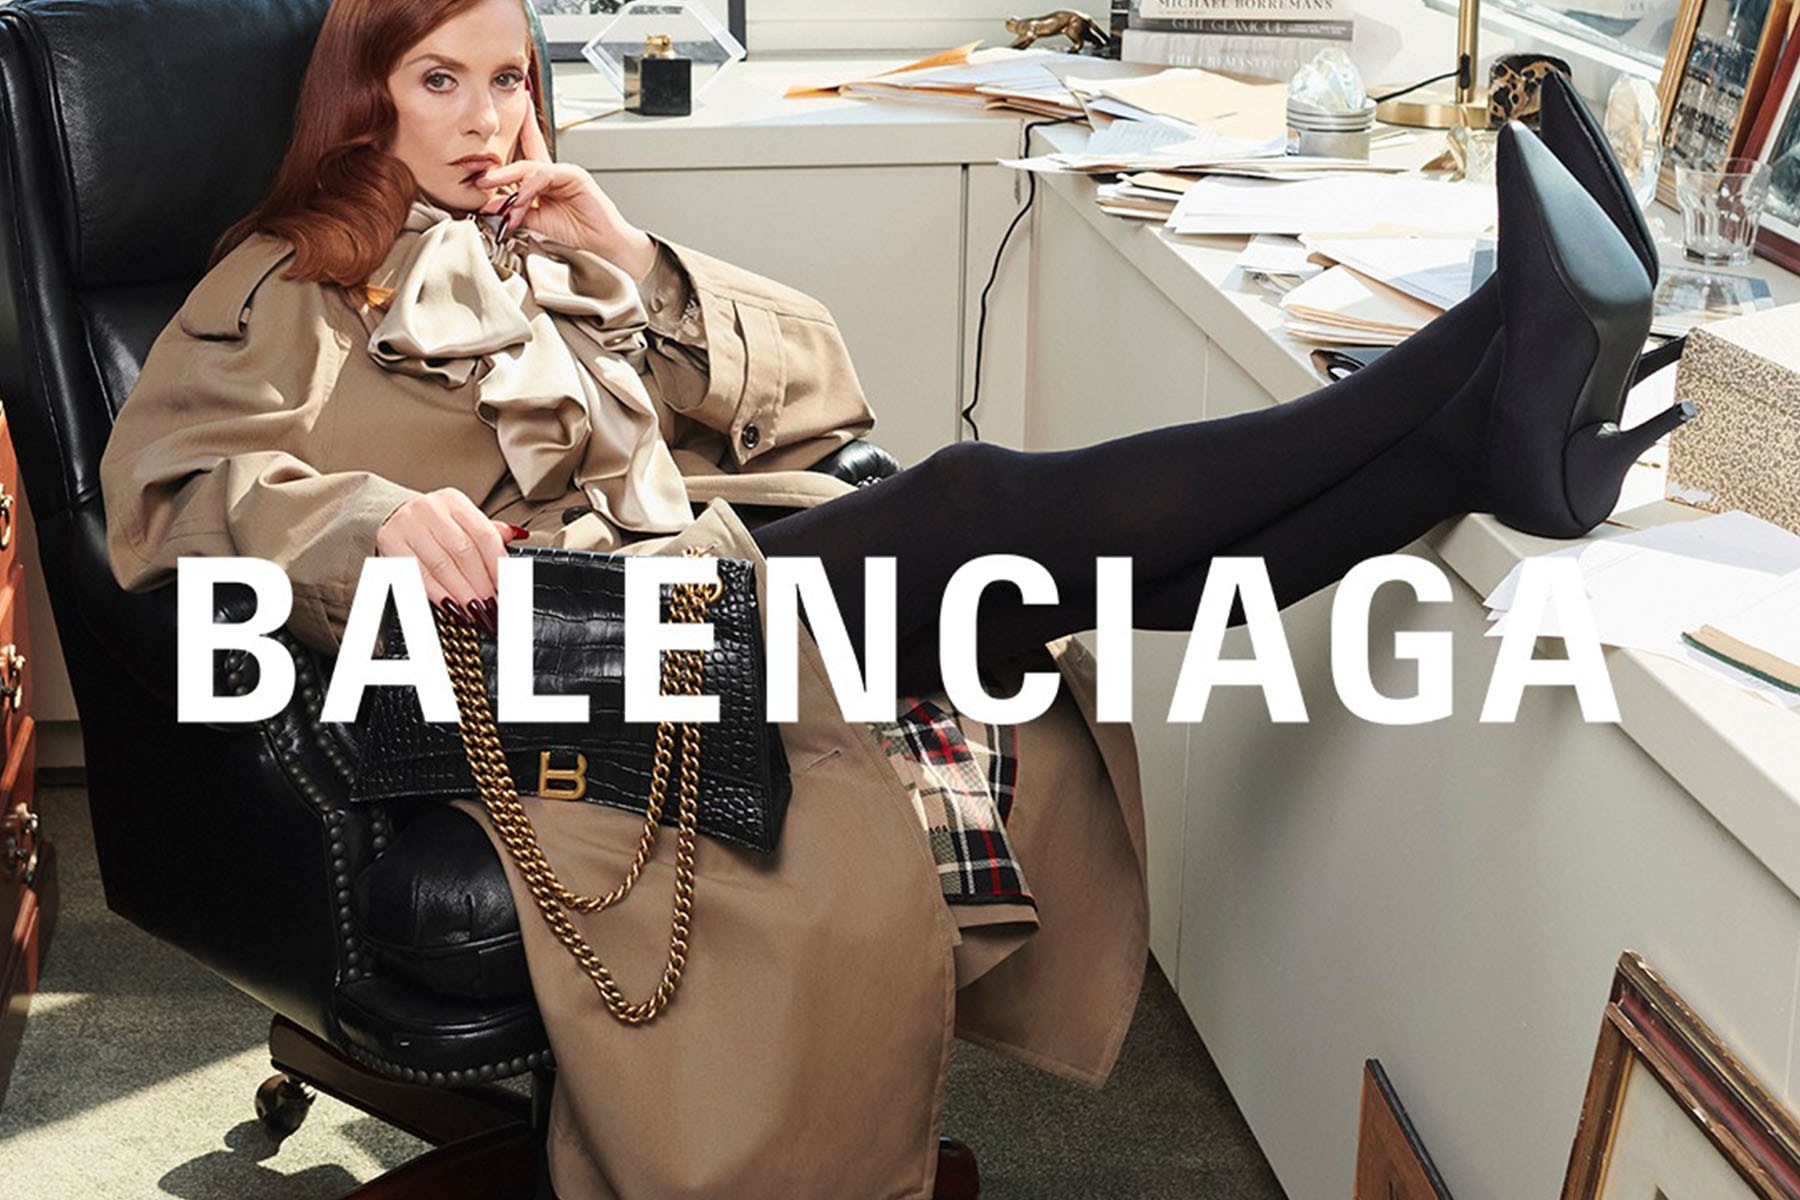 形象廣告爭議難平！Balenciaga 正式對製作公司提告求償 $2,500 萬美元 